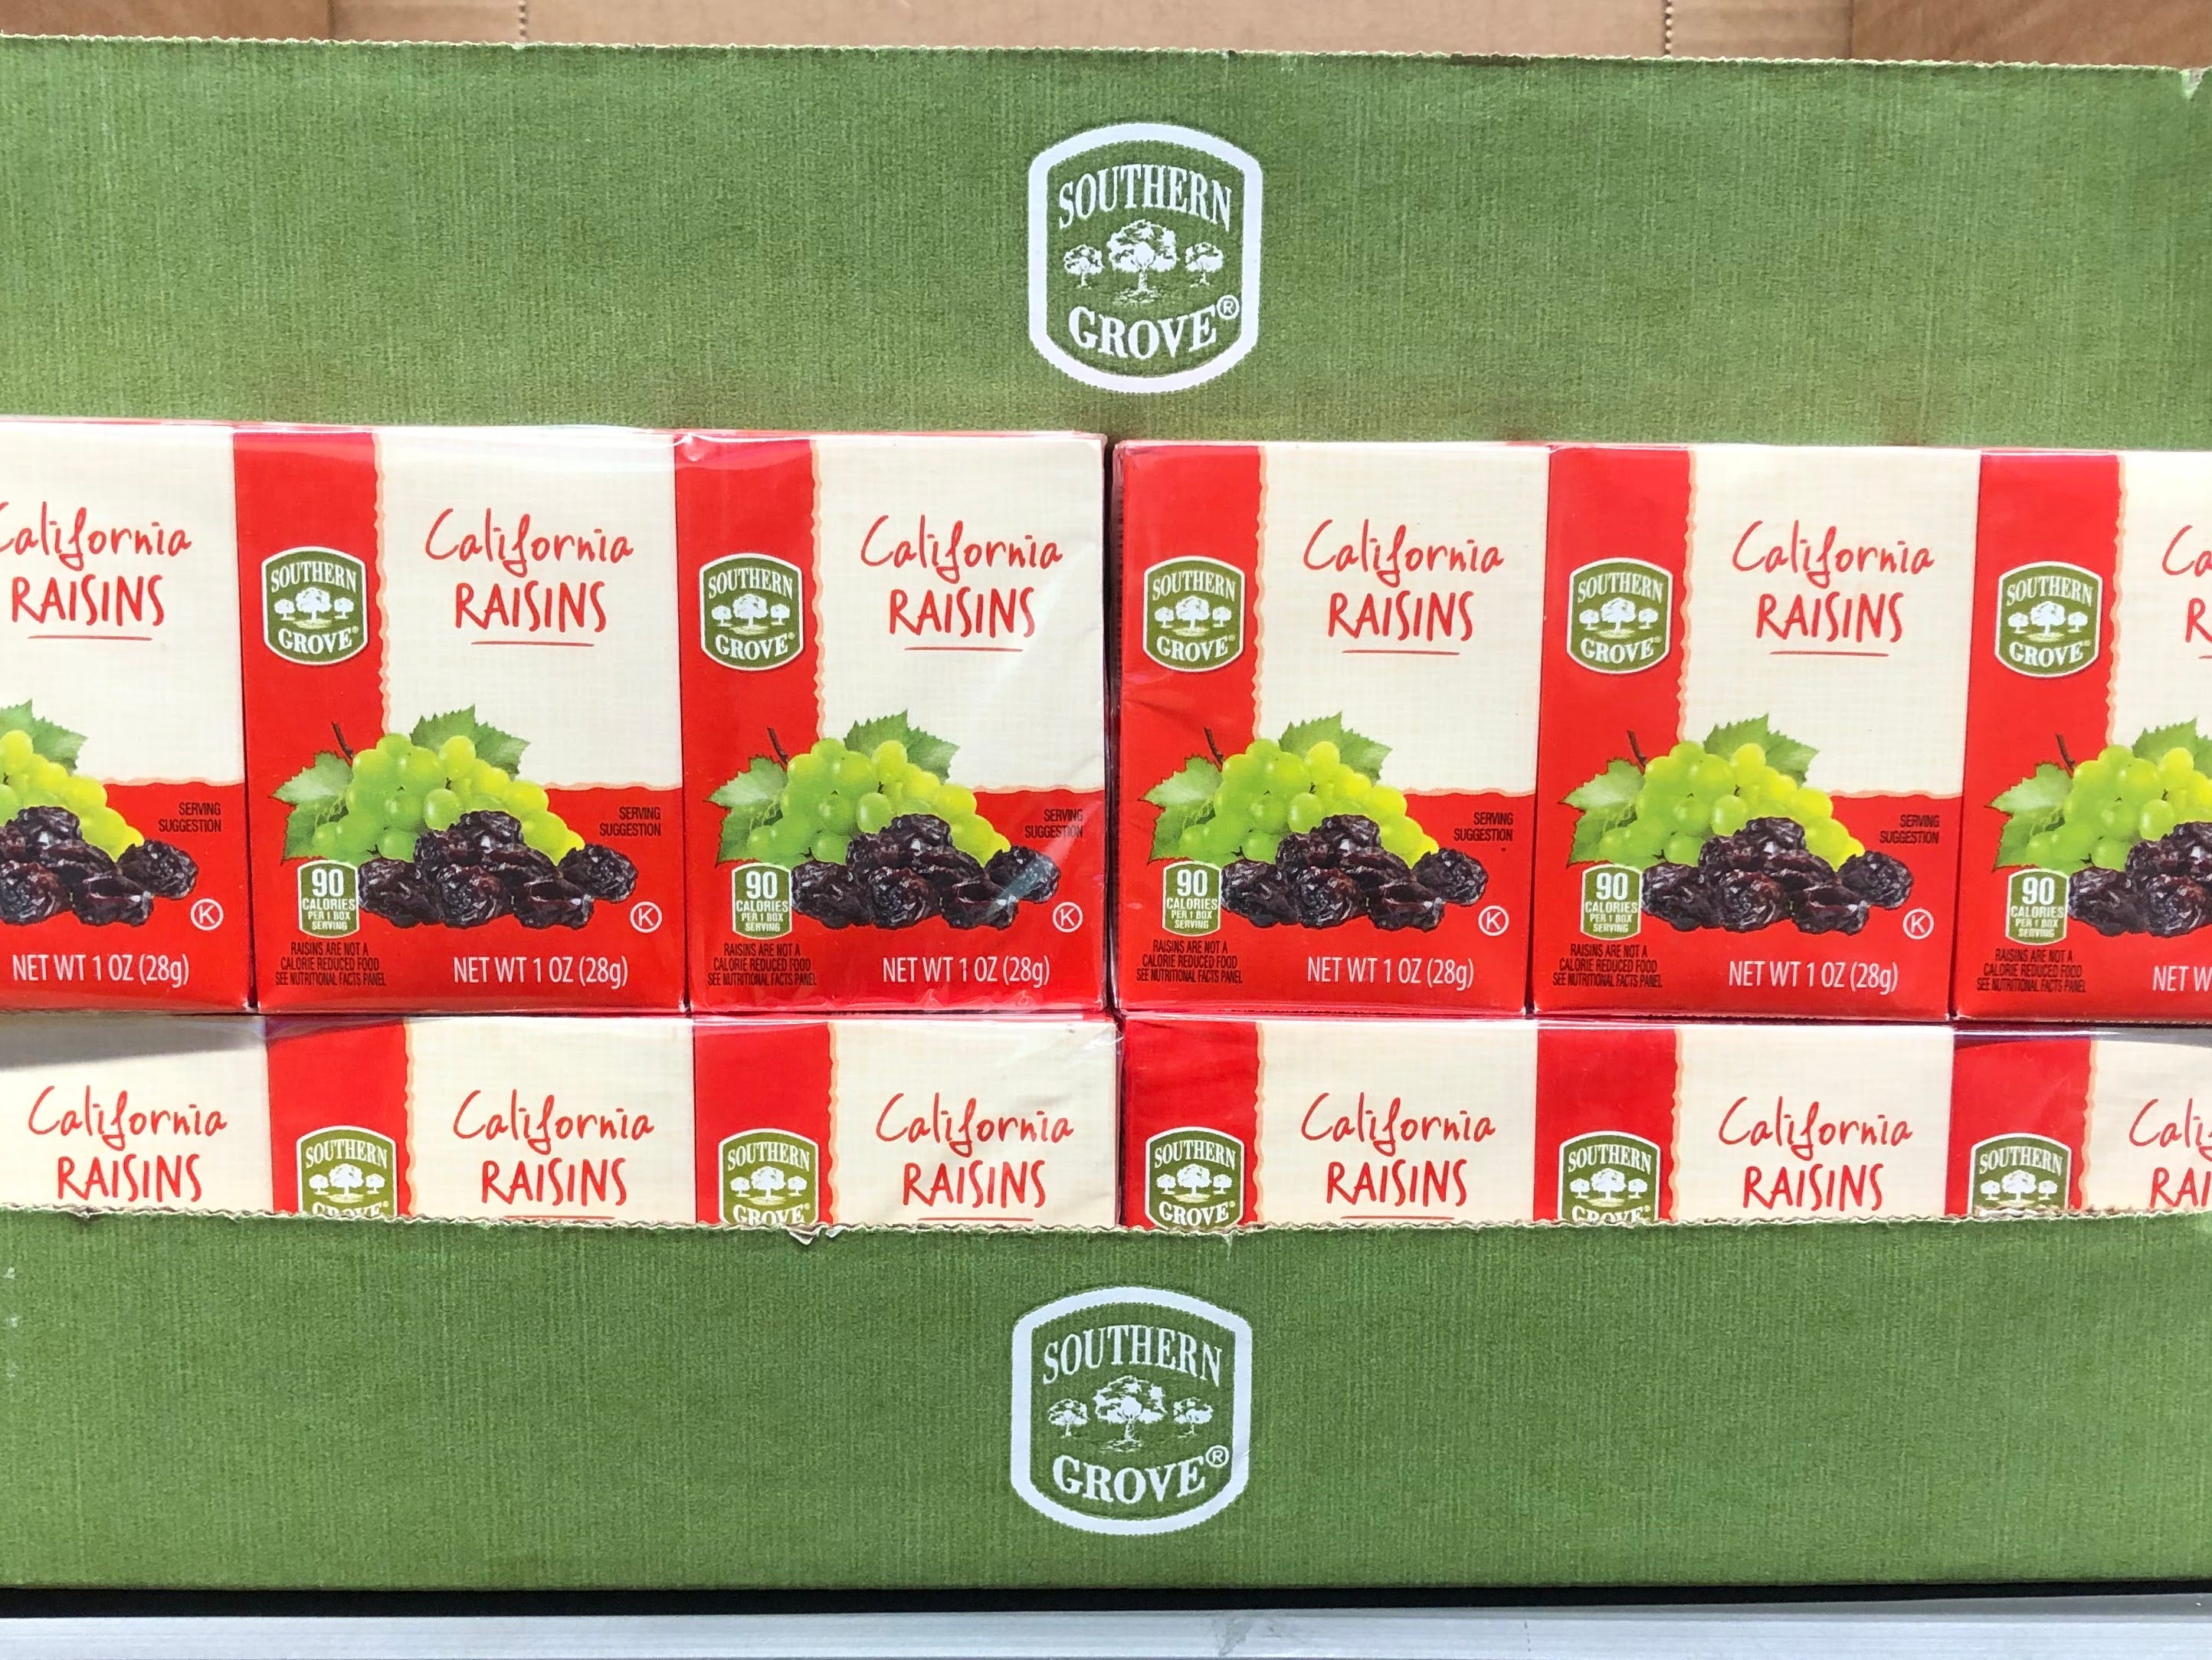 Schachteln mit Southern Grove California-Rosinen sind bei Aldi ausgestellt, auf dem Preisschild steht 1,75 US-Dollar.